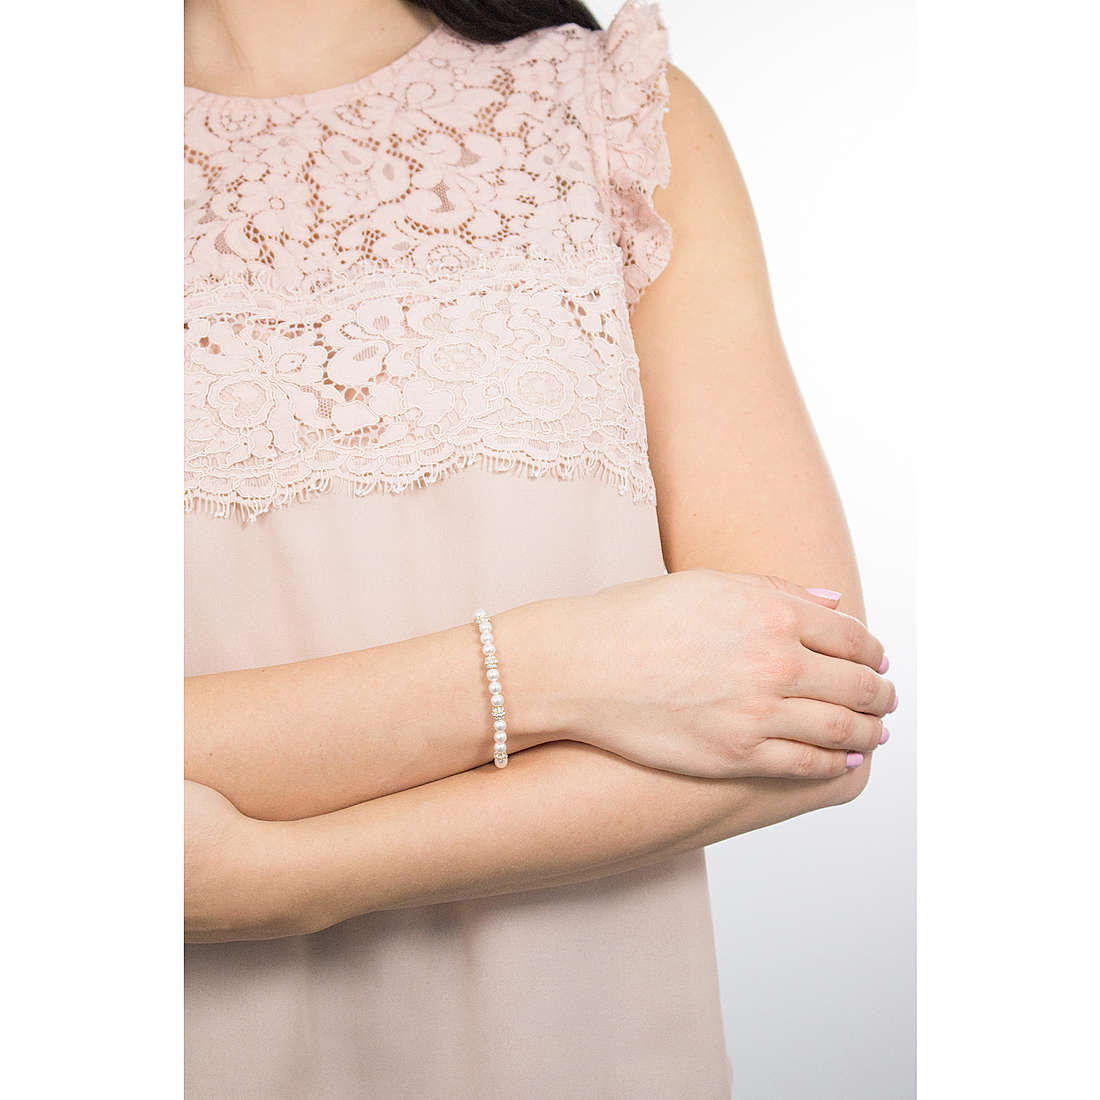 Michael Kors bracelets Fashion woman MKJ6293710 wearing